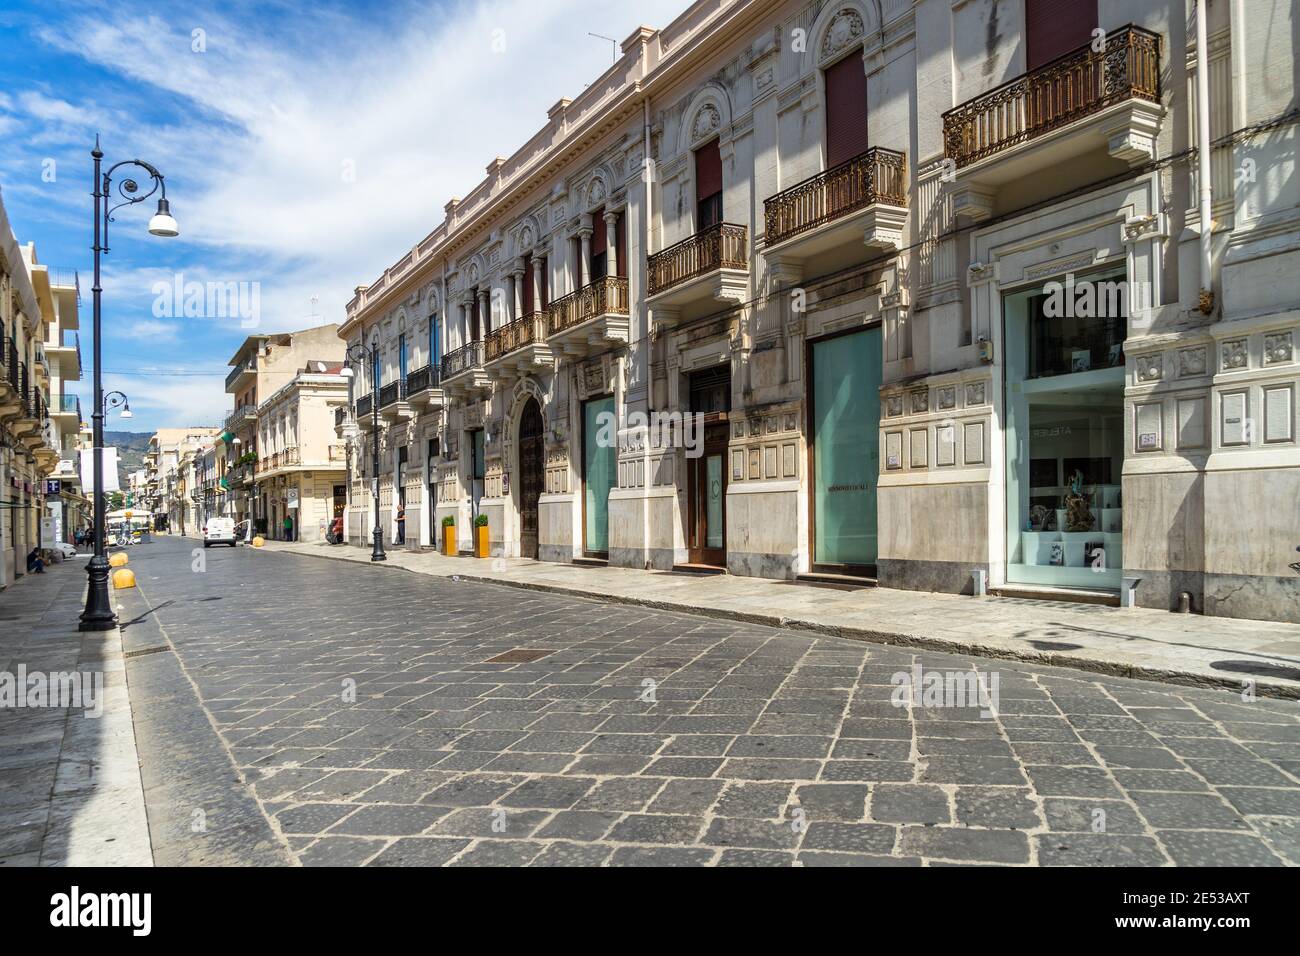 Main pedestrian and shopping street (Corso Garibaldi) in Reggio Calabria city centre, Italy Stock Photo